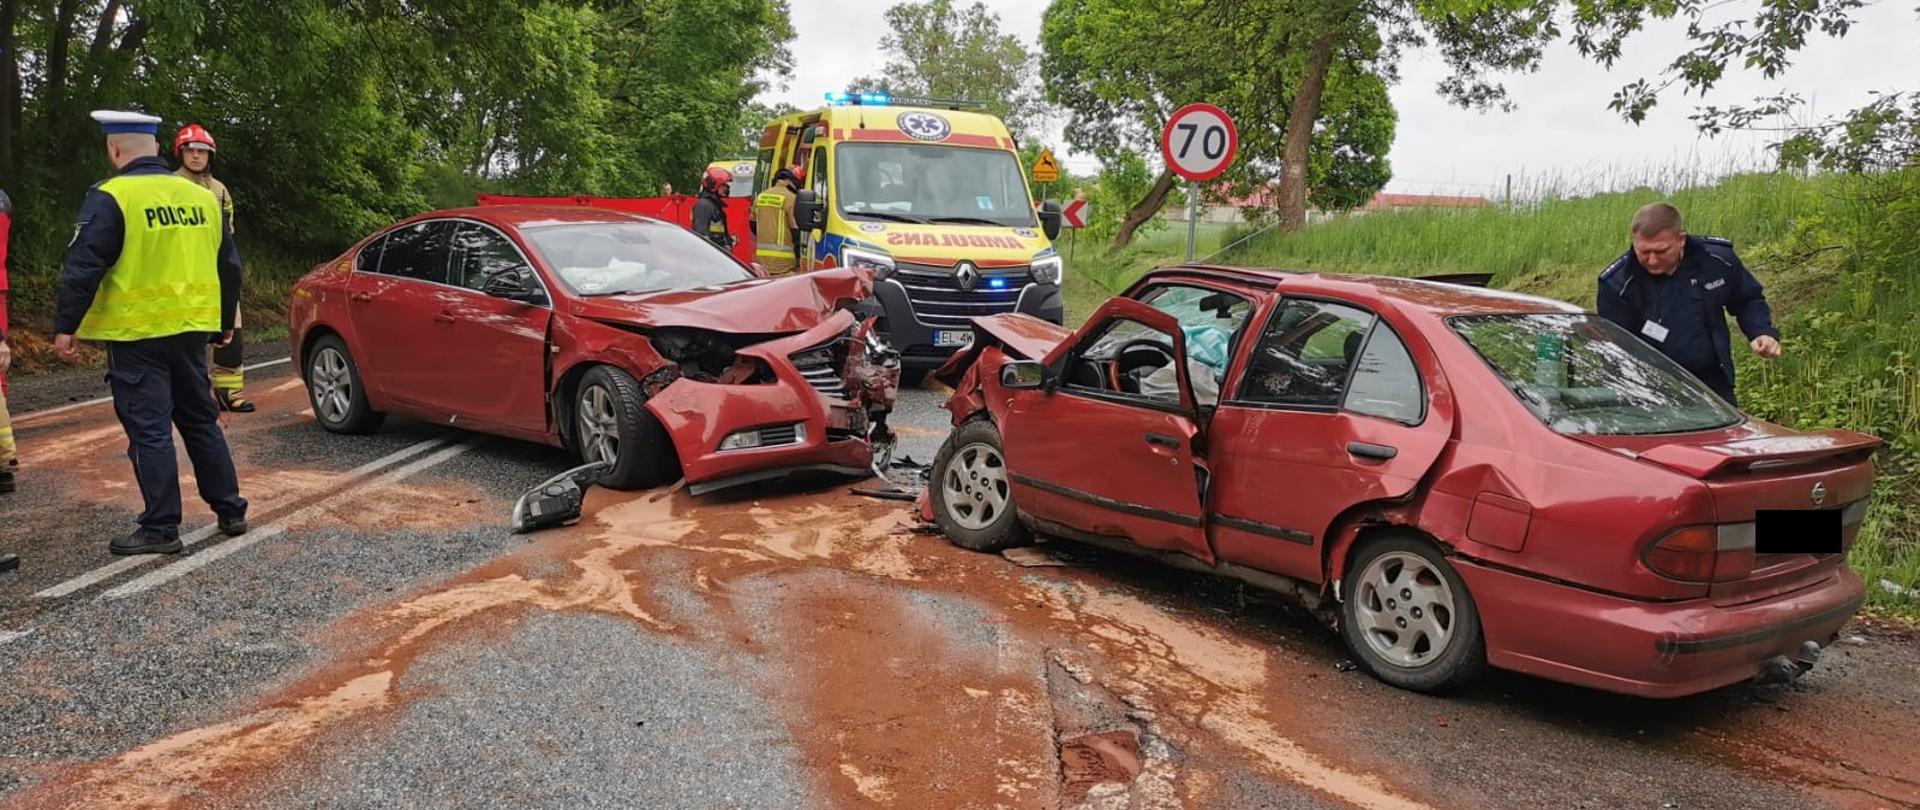 Dwa samochodu koloru bordowego po wypadku czołowym na skrzyżowaniu w miejscowości Rogów Wieś. Uszkodzone przodu obu pojazdów oraz plama płynów eksploatacyjnych posypana sorbentem